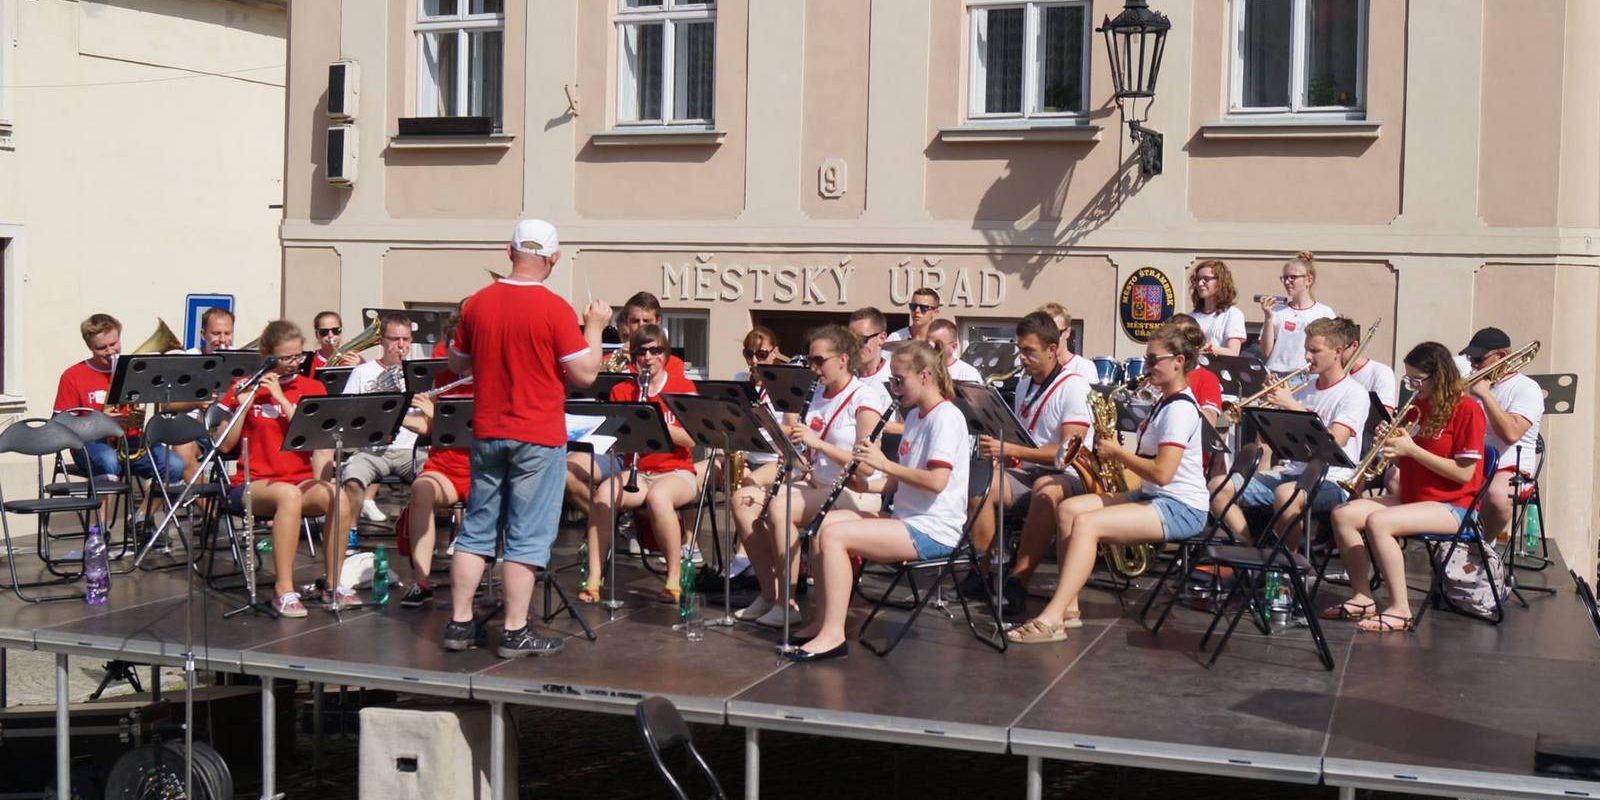 Festiwal orkiestr w Strambergu